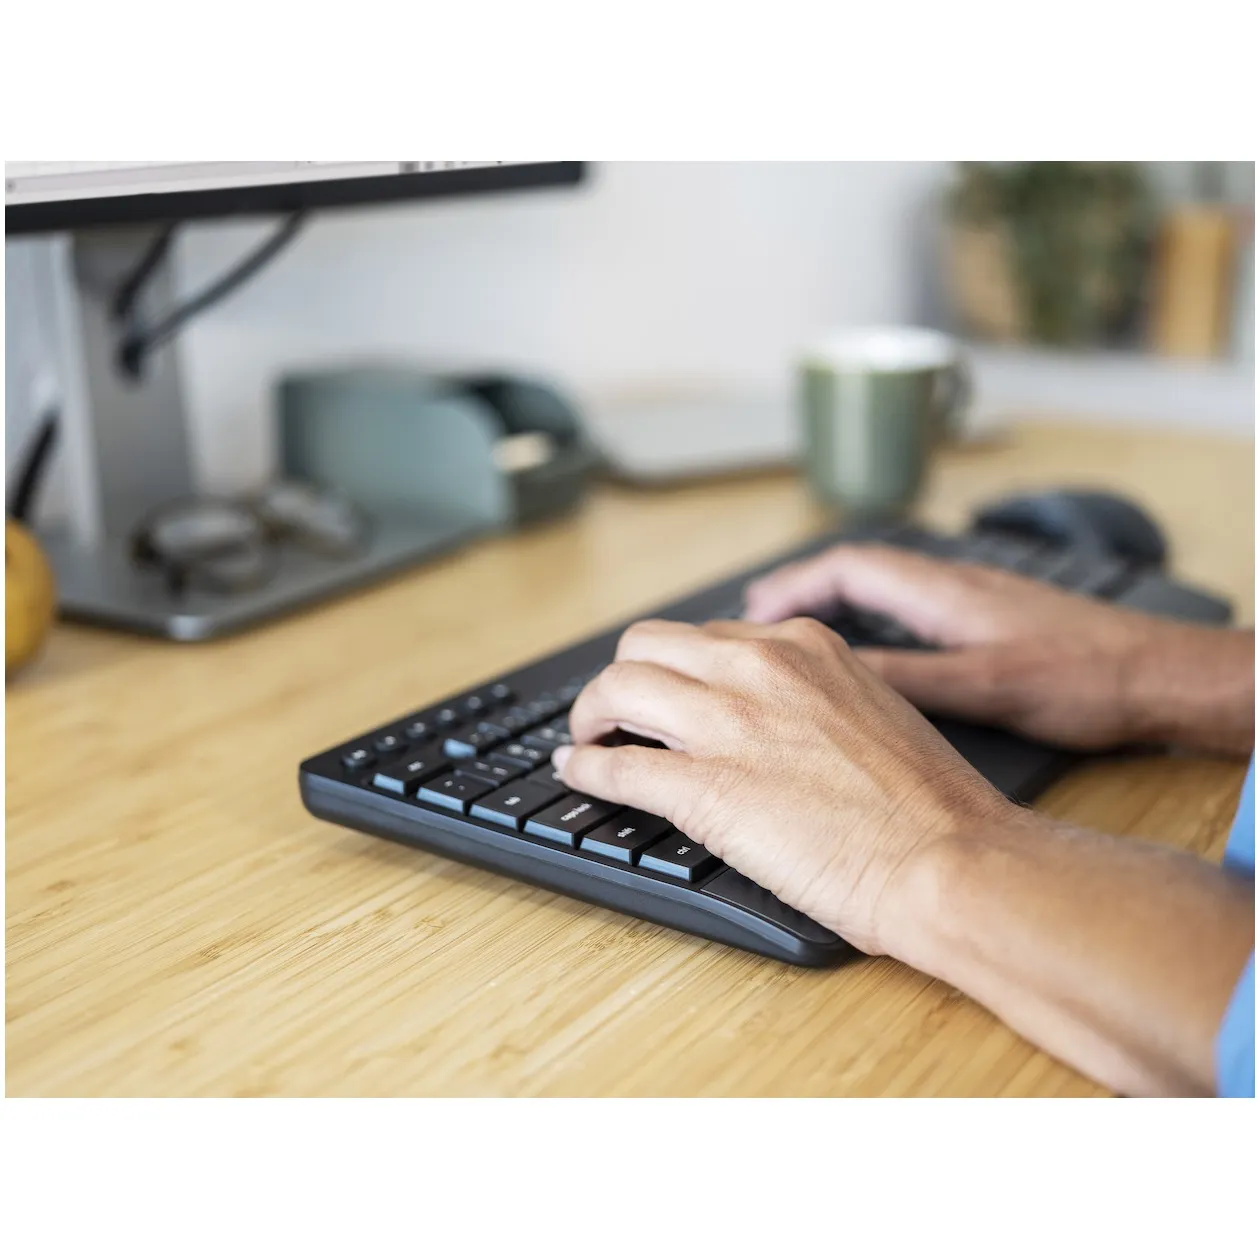 Trust Trezo Comfort Draadloze Keyboard & Mouse Set